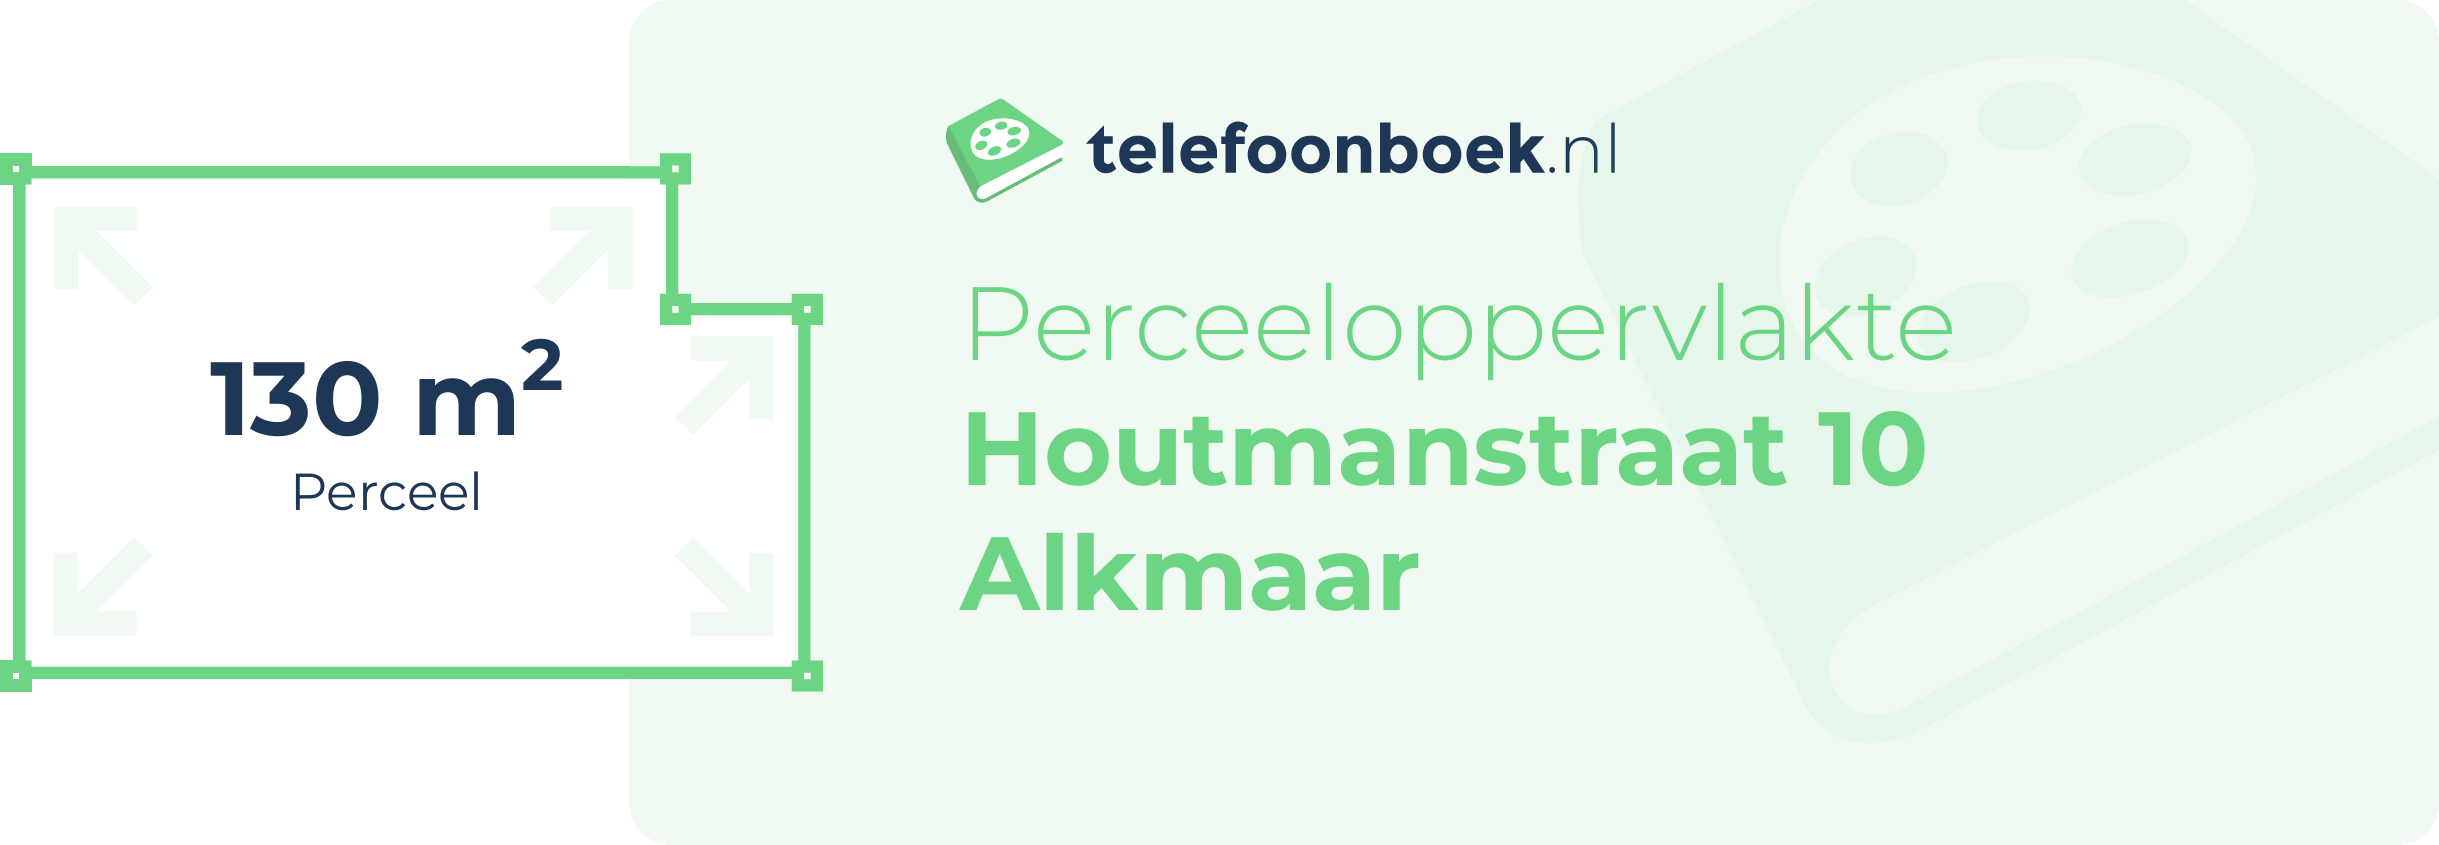 Perceeloppervlakte Houtmanstraat 10 Alkmaar